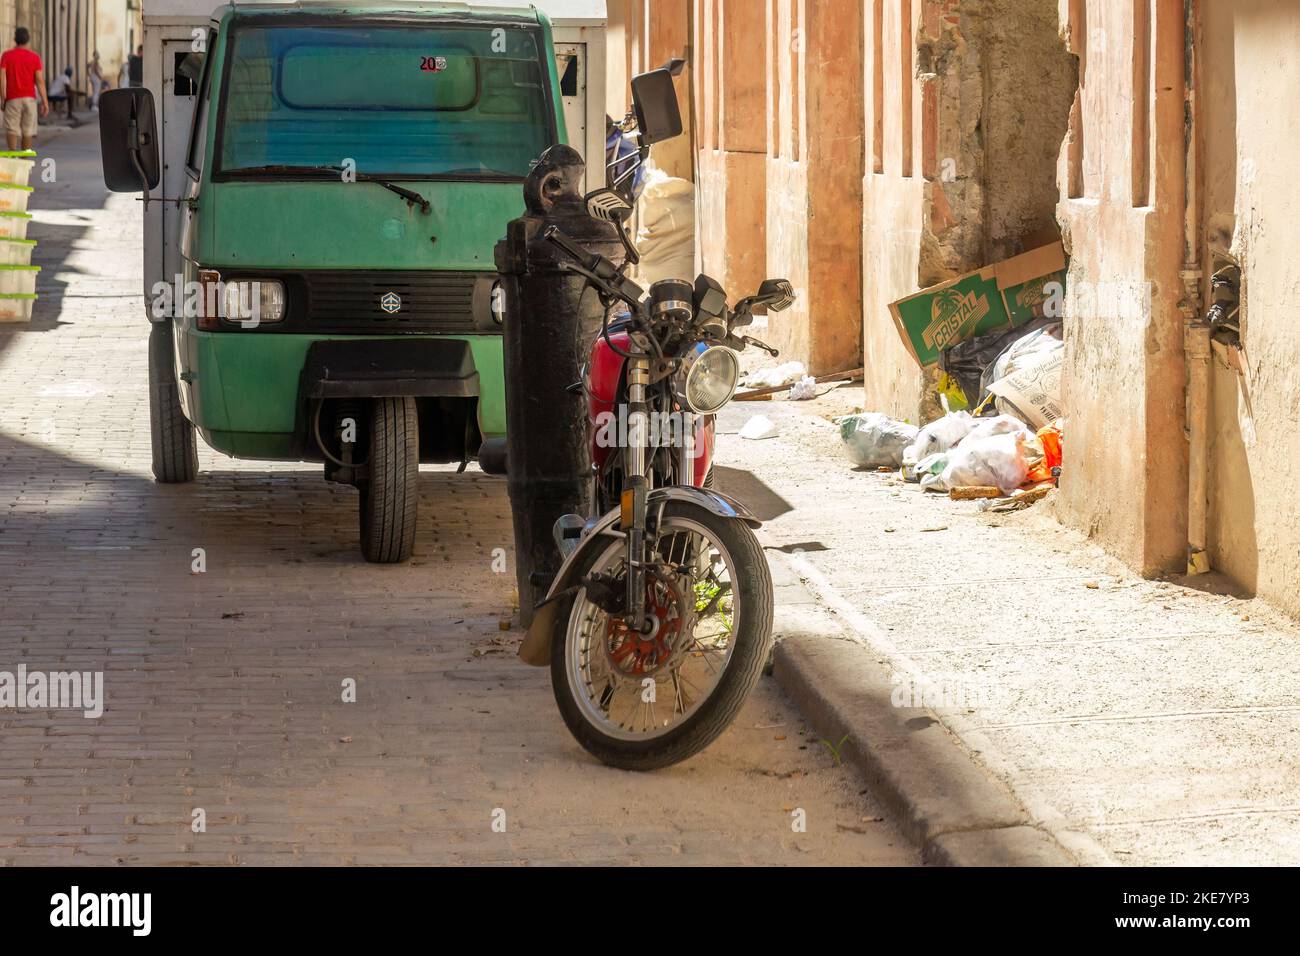 Una motocicleta y otro vehículo pequeño están estacionados en La Habana Vieja. Hay un montón de basura en la acera y entre los edificios. Foto de stock